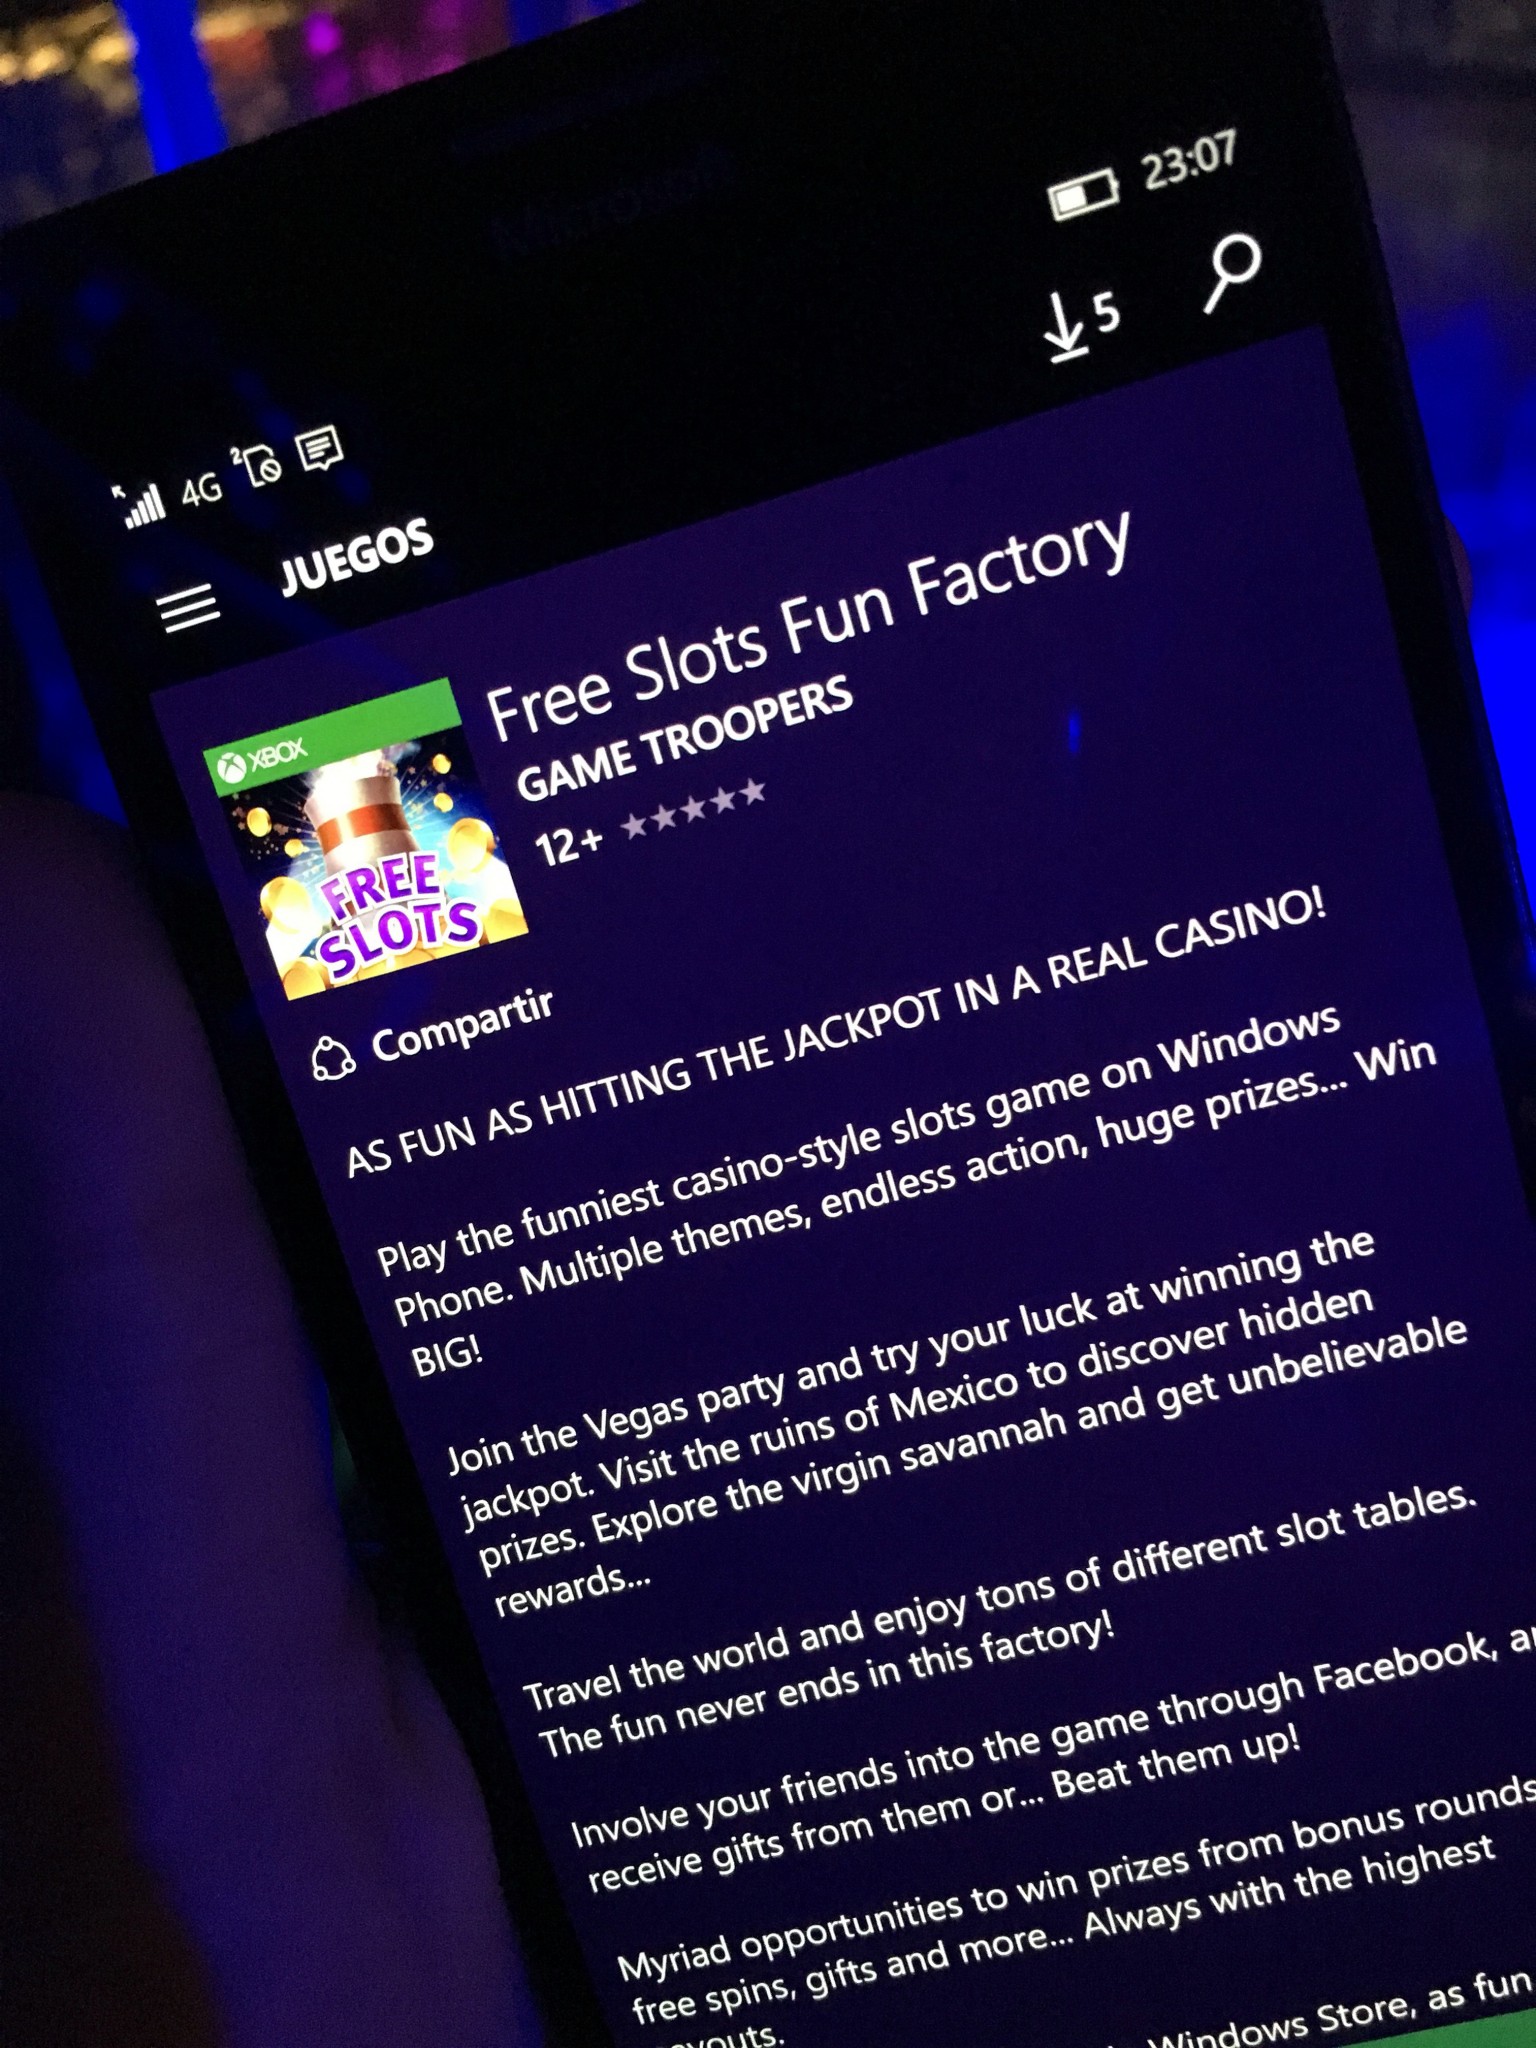 Game troopers nos presenta su nuevo juego Xbox, Free Slots Fun Factory